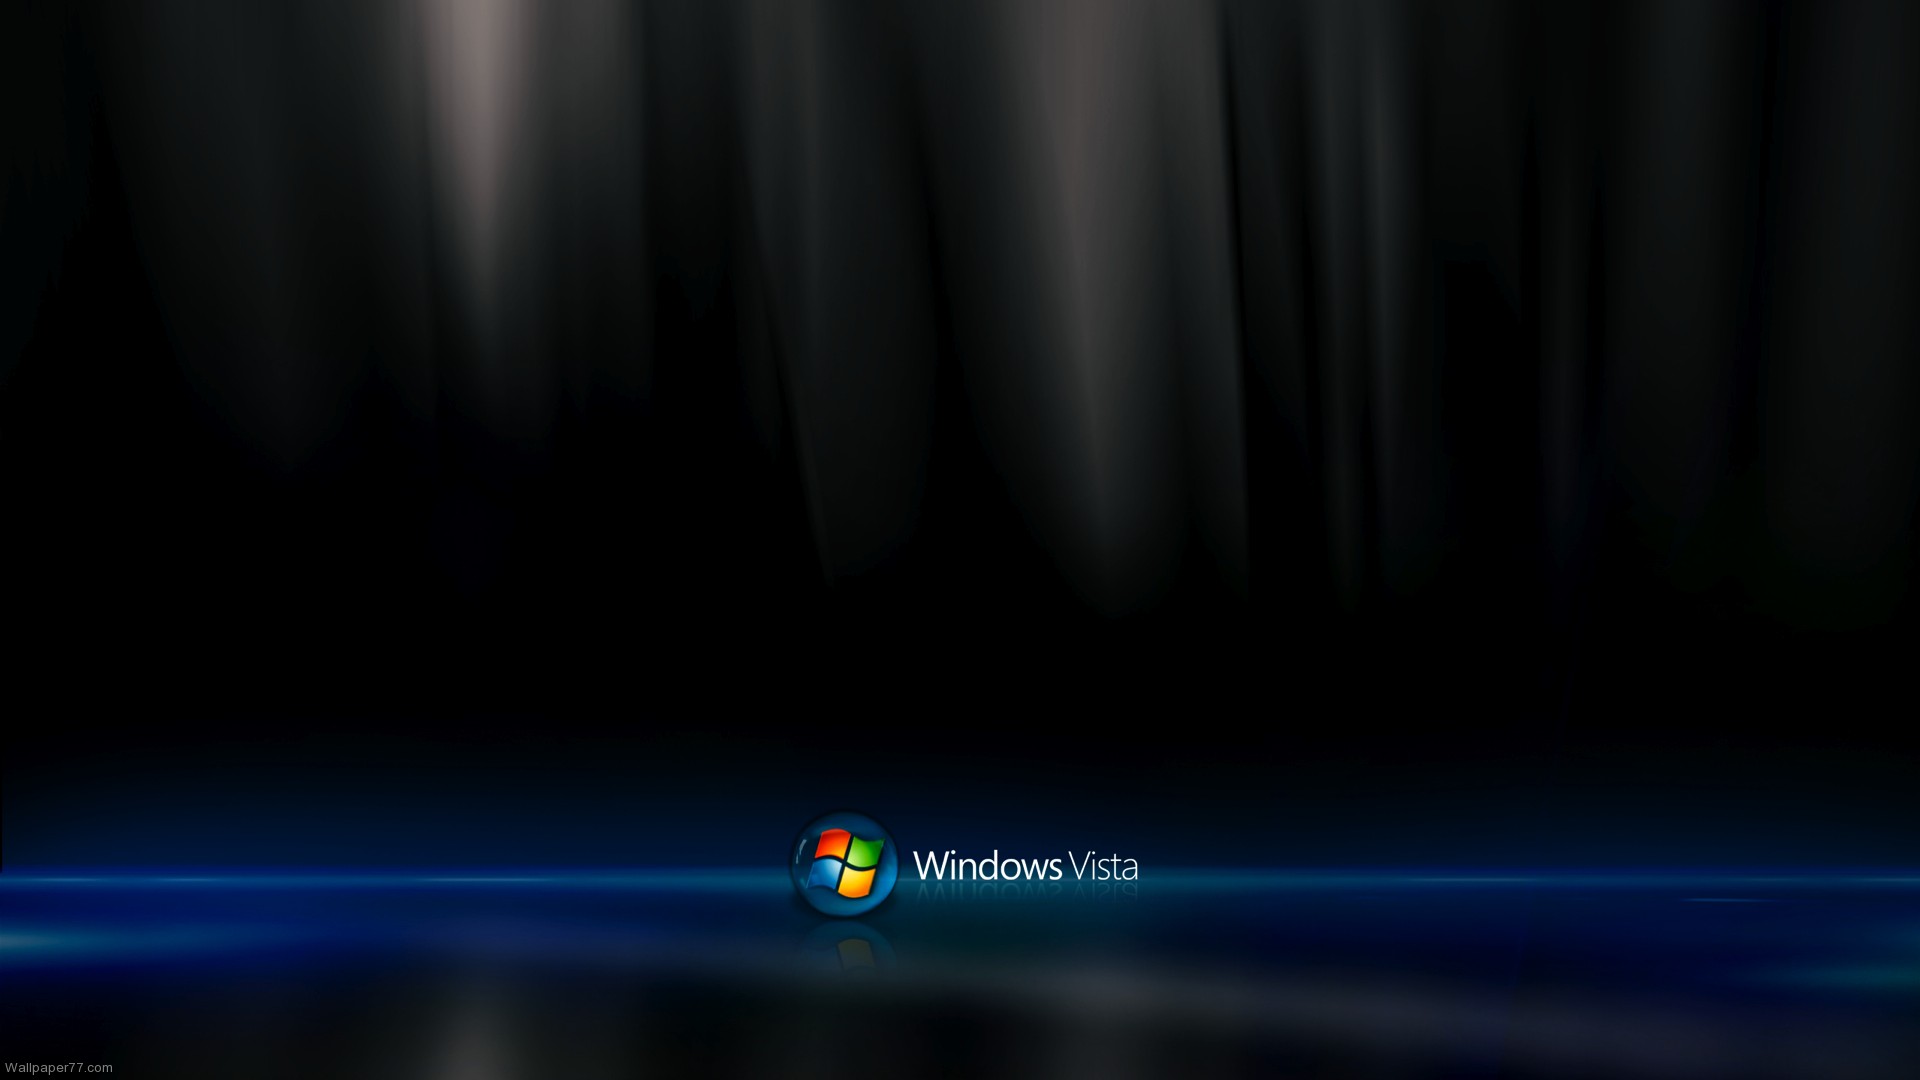 Free Download Windows Vista Desktop Wallpaper Wwwwallpapers In